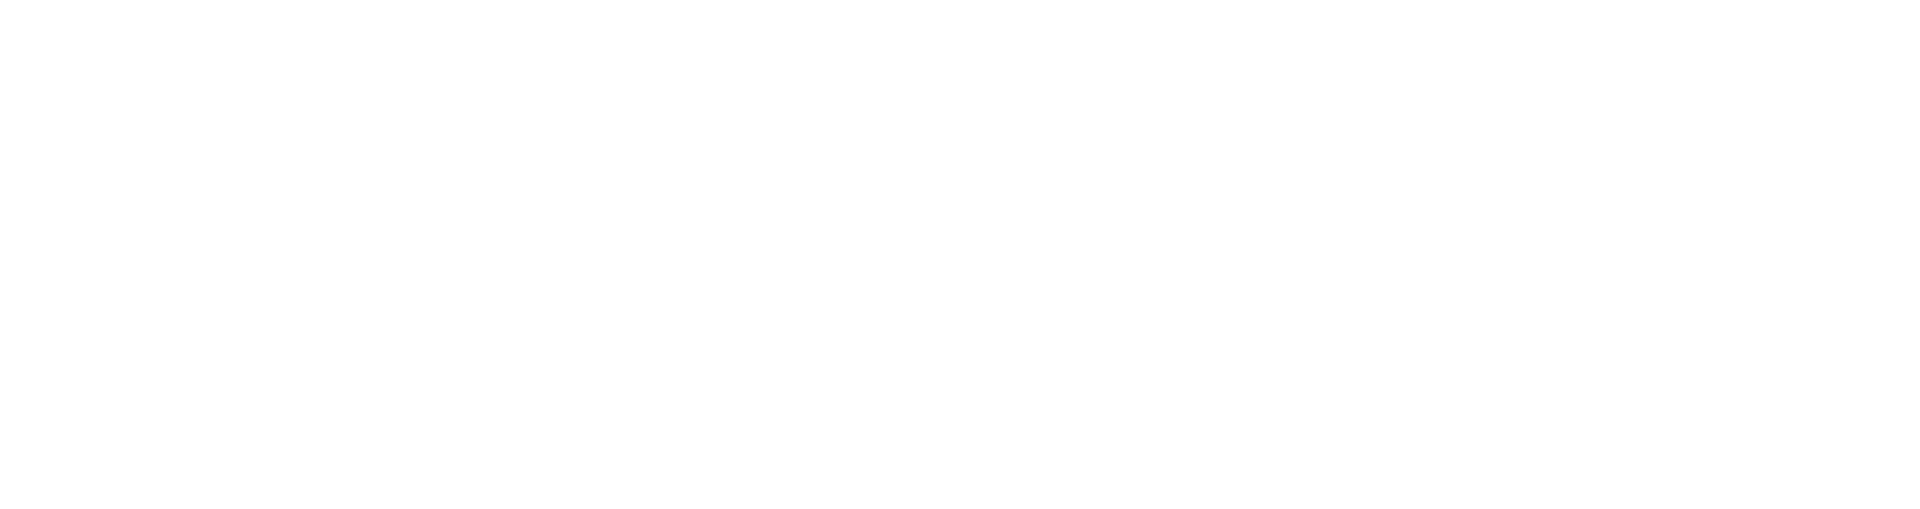 Logo Baker Tilly